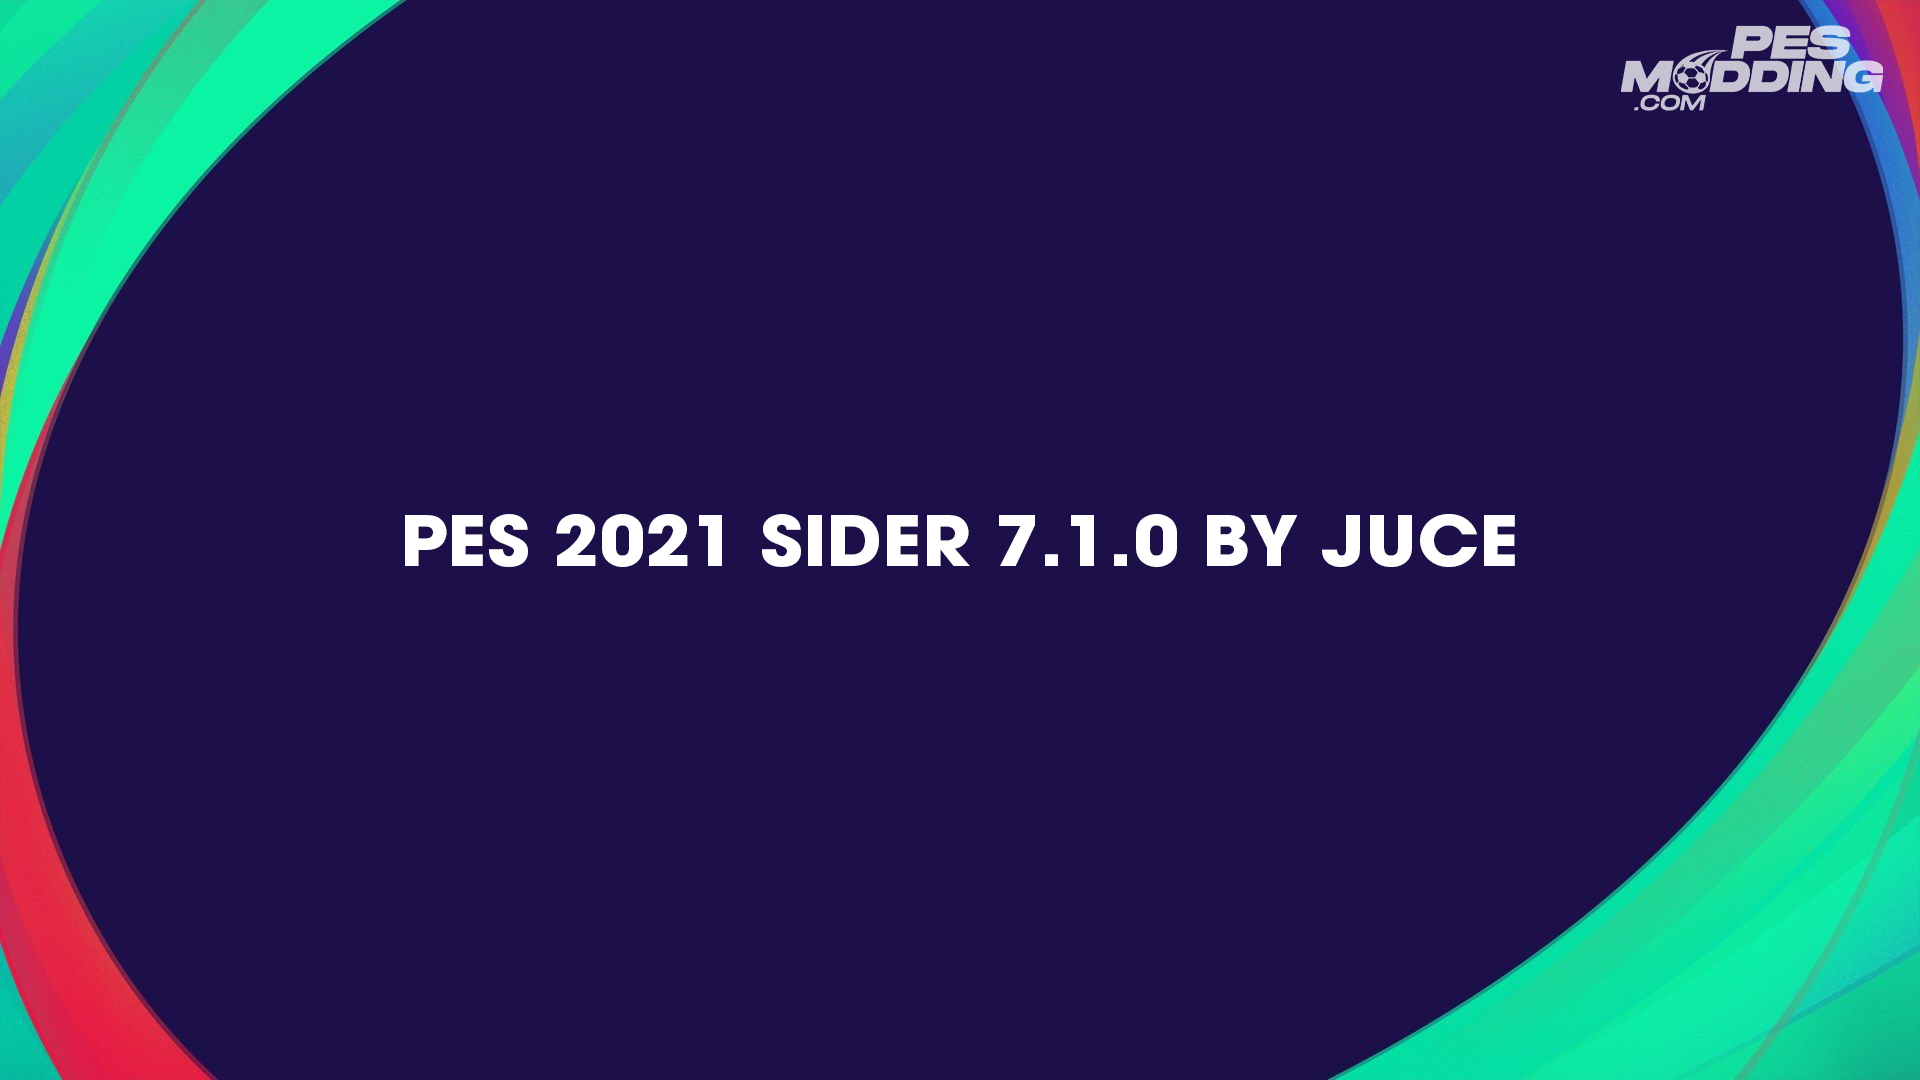 PES 2021 Sider 7.1.0